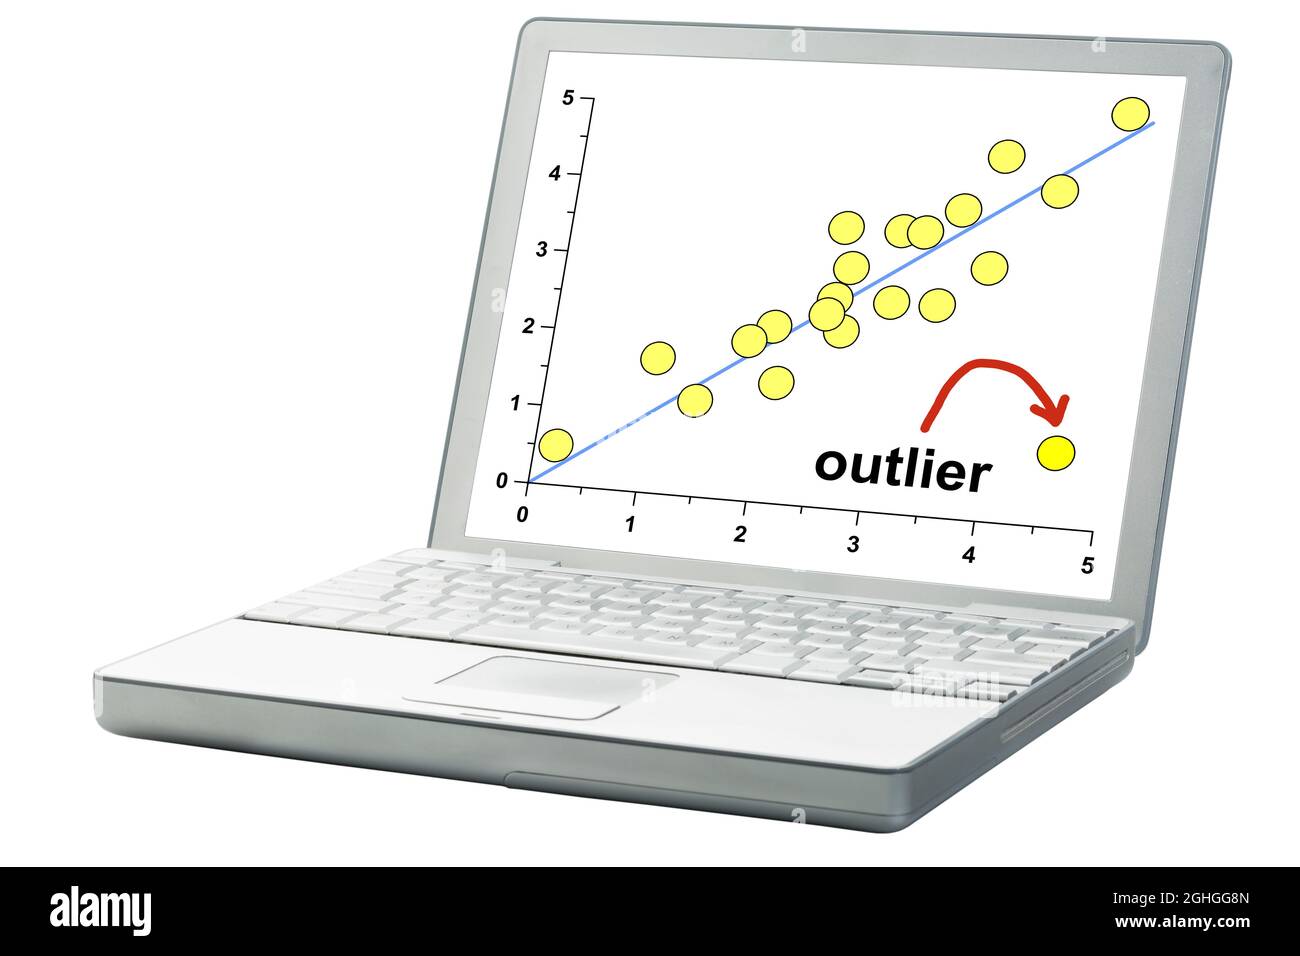 concept outlier ou outsider sur un ordinateur portable, graphique de dispersion des données Banque D'Images